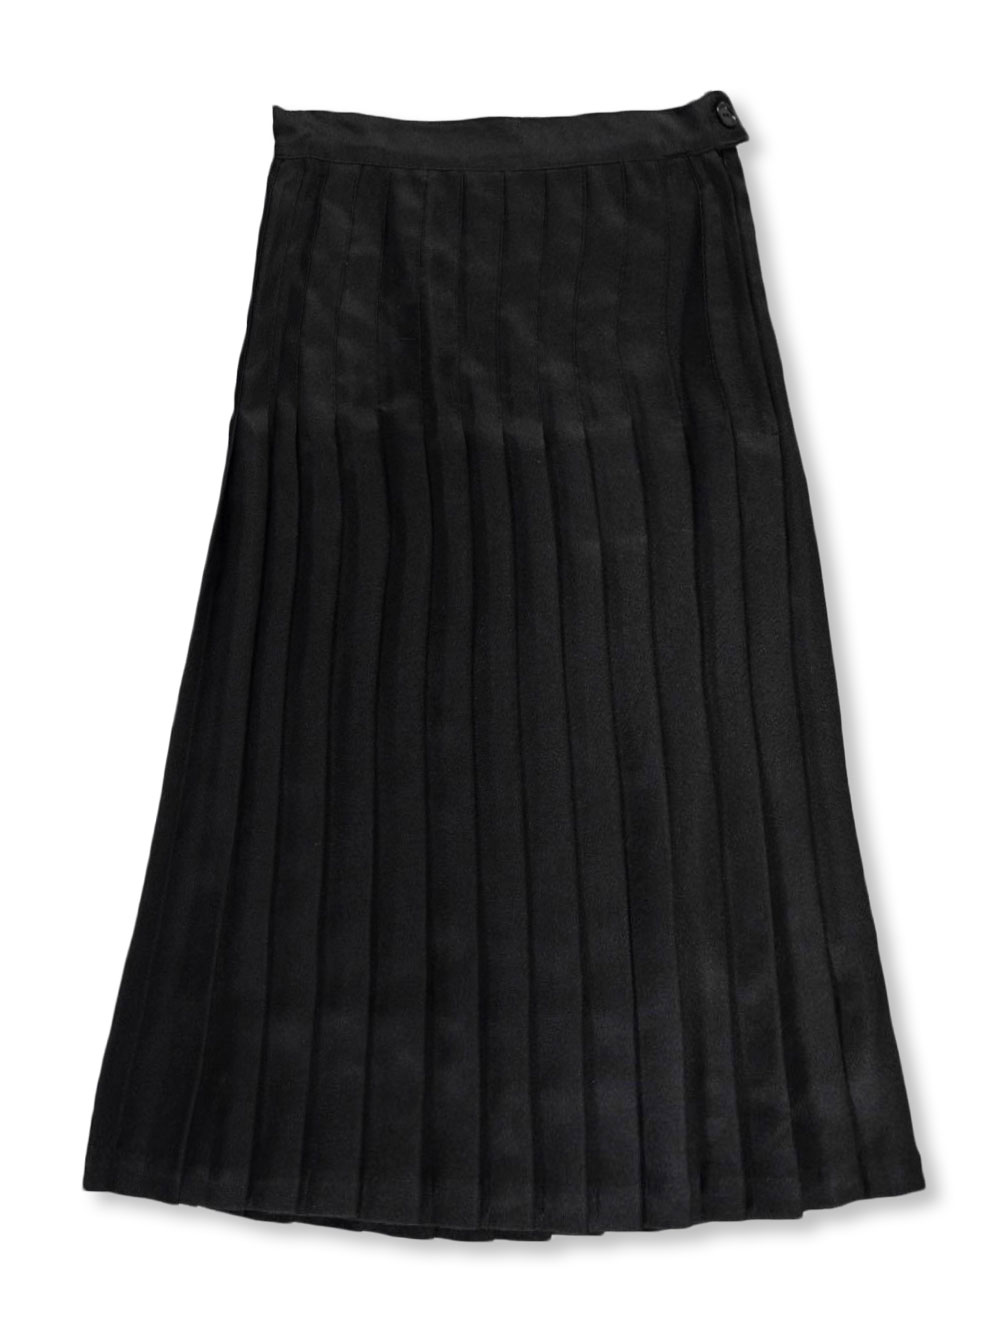 long black skirt size 20